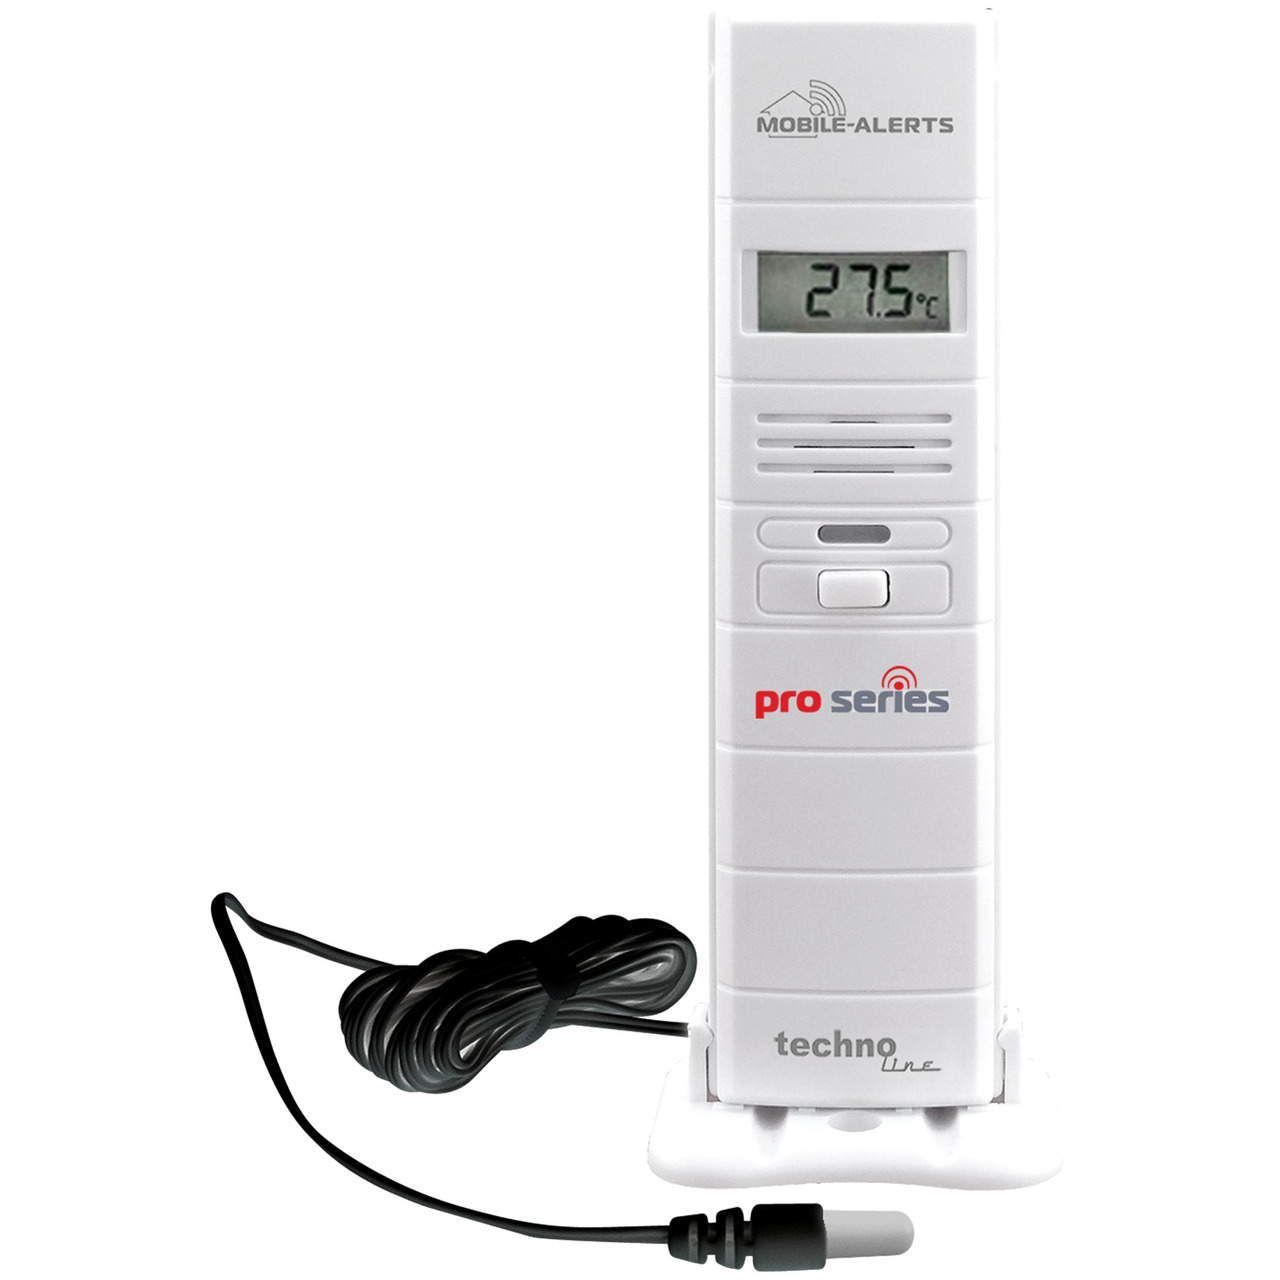 Mobile Alerts Thermo-Hygrosensor MA10320 (PRO) mit zusätzlichem Temperaturfühler (Kabelsonde) unter Klima - Wetter - Umwelt